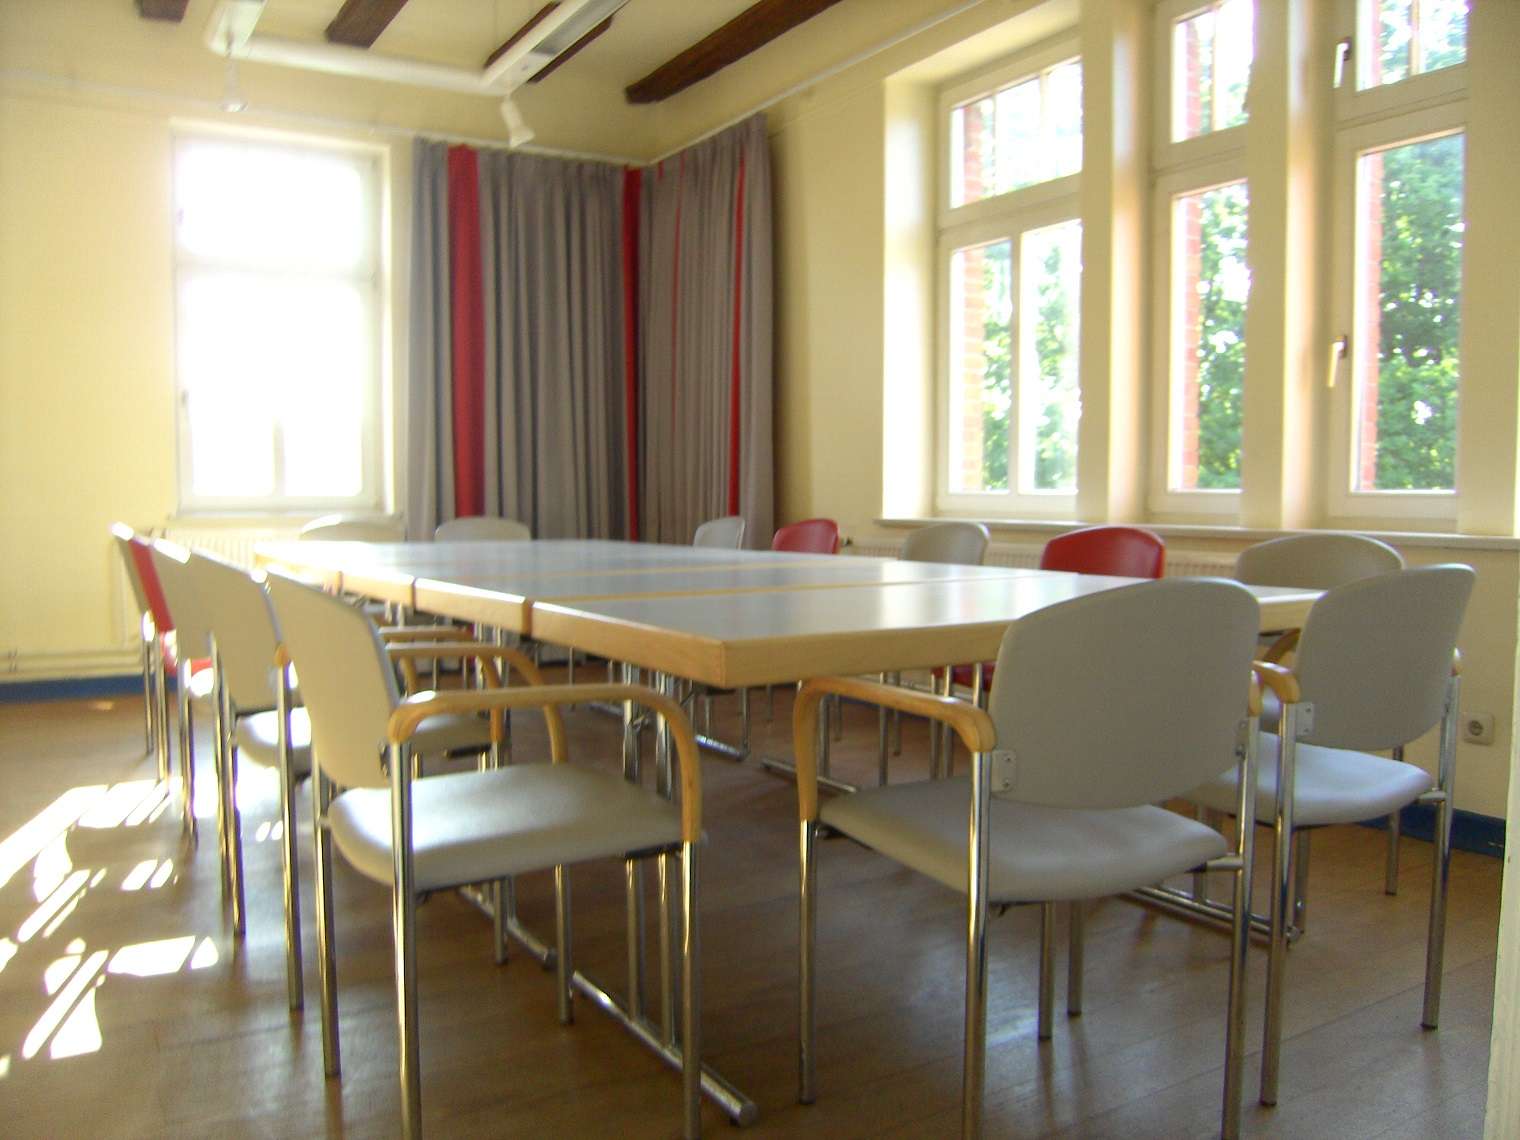 Unser Bahnhof heller Seminar-Raum mit Tischen und Stühlen